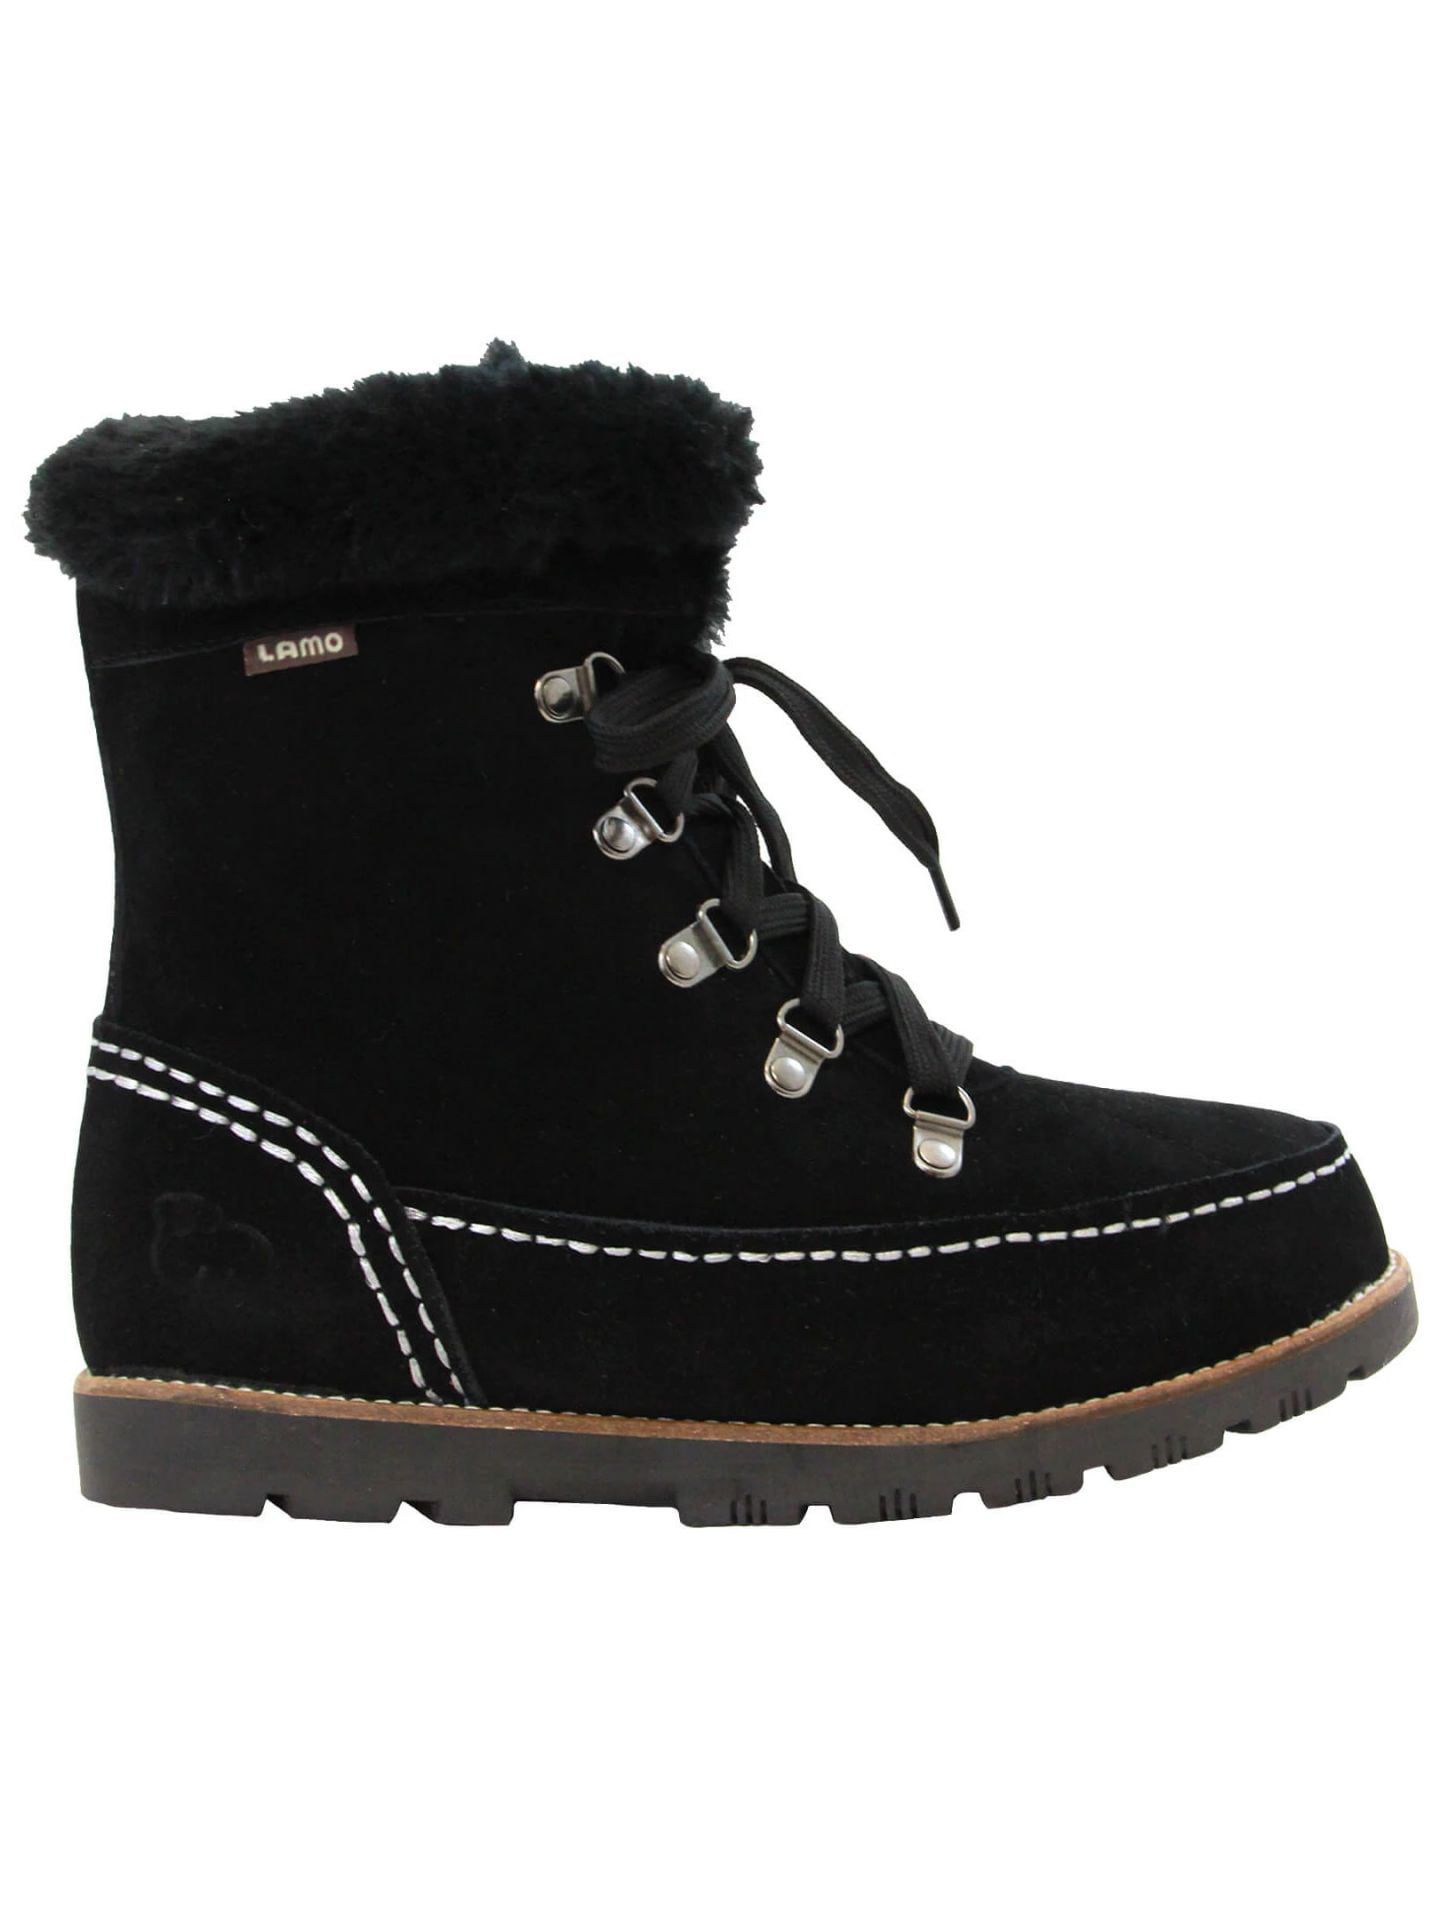 Lamo - Lamo Footwear Women's Taylor Boots, Black, 6 - Walmart.com ...